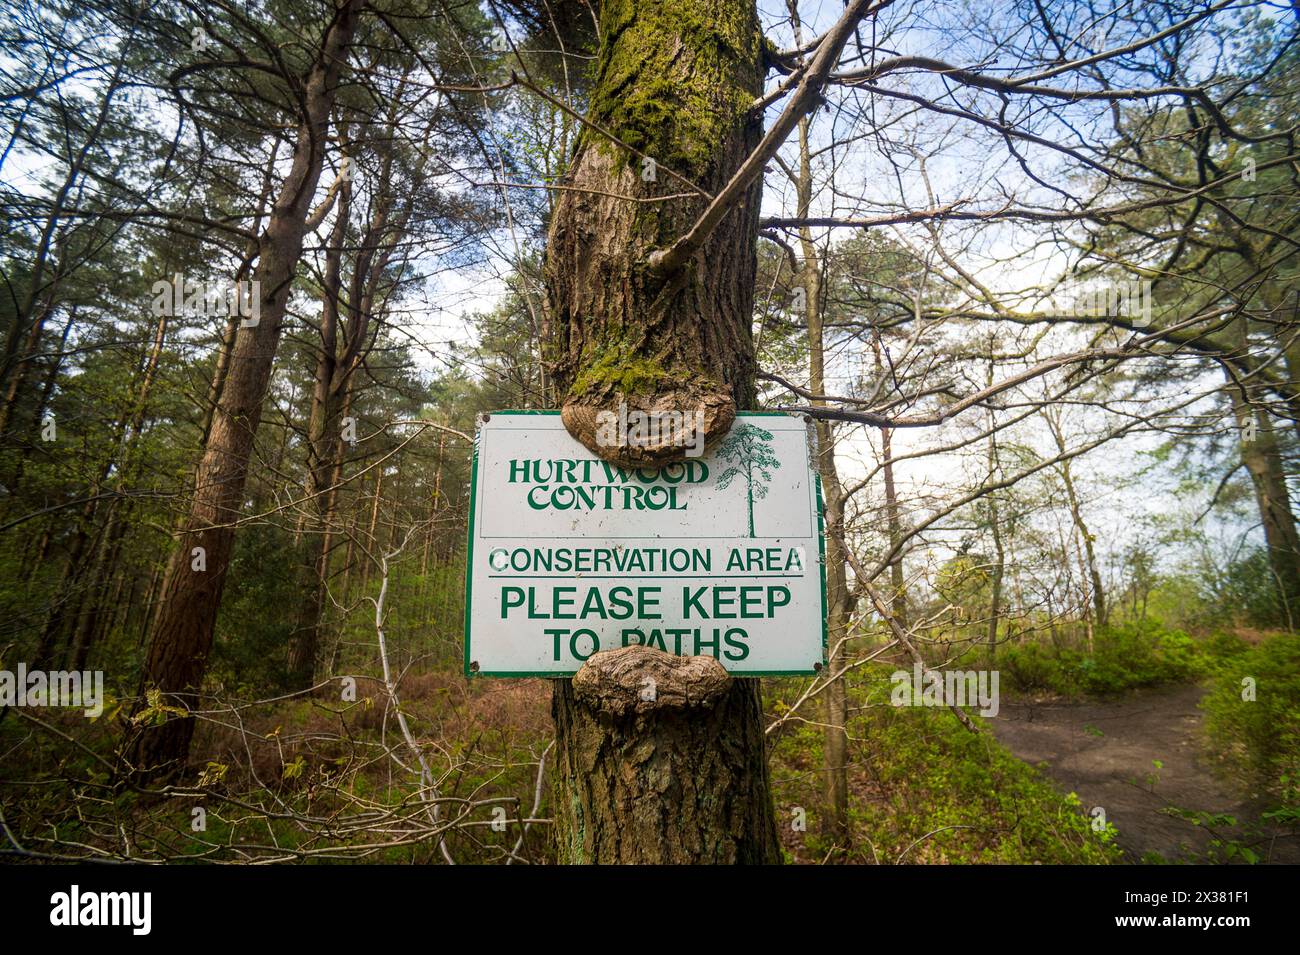 Cartello con la scritta "Conservation area", si prega di mantenersi sui sentieri. Controllo Hurtwood. Surrey, Regno Unito Foto Stock